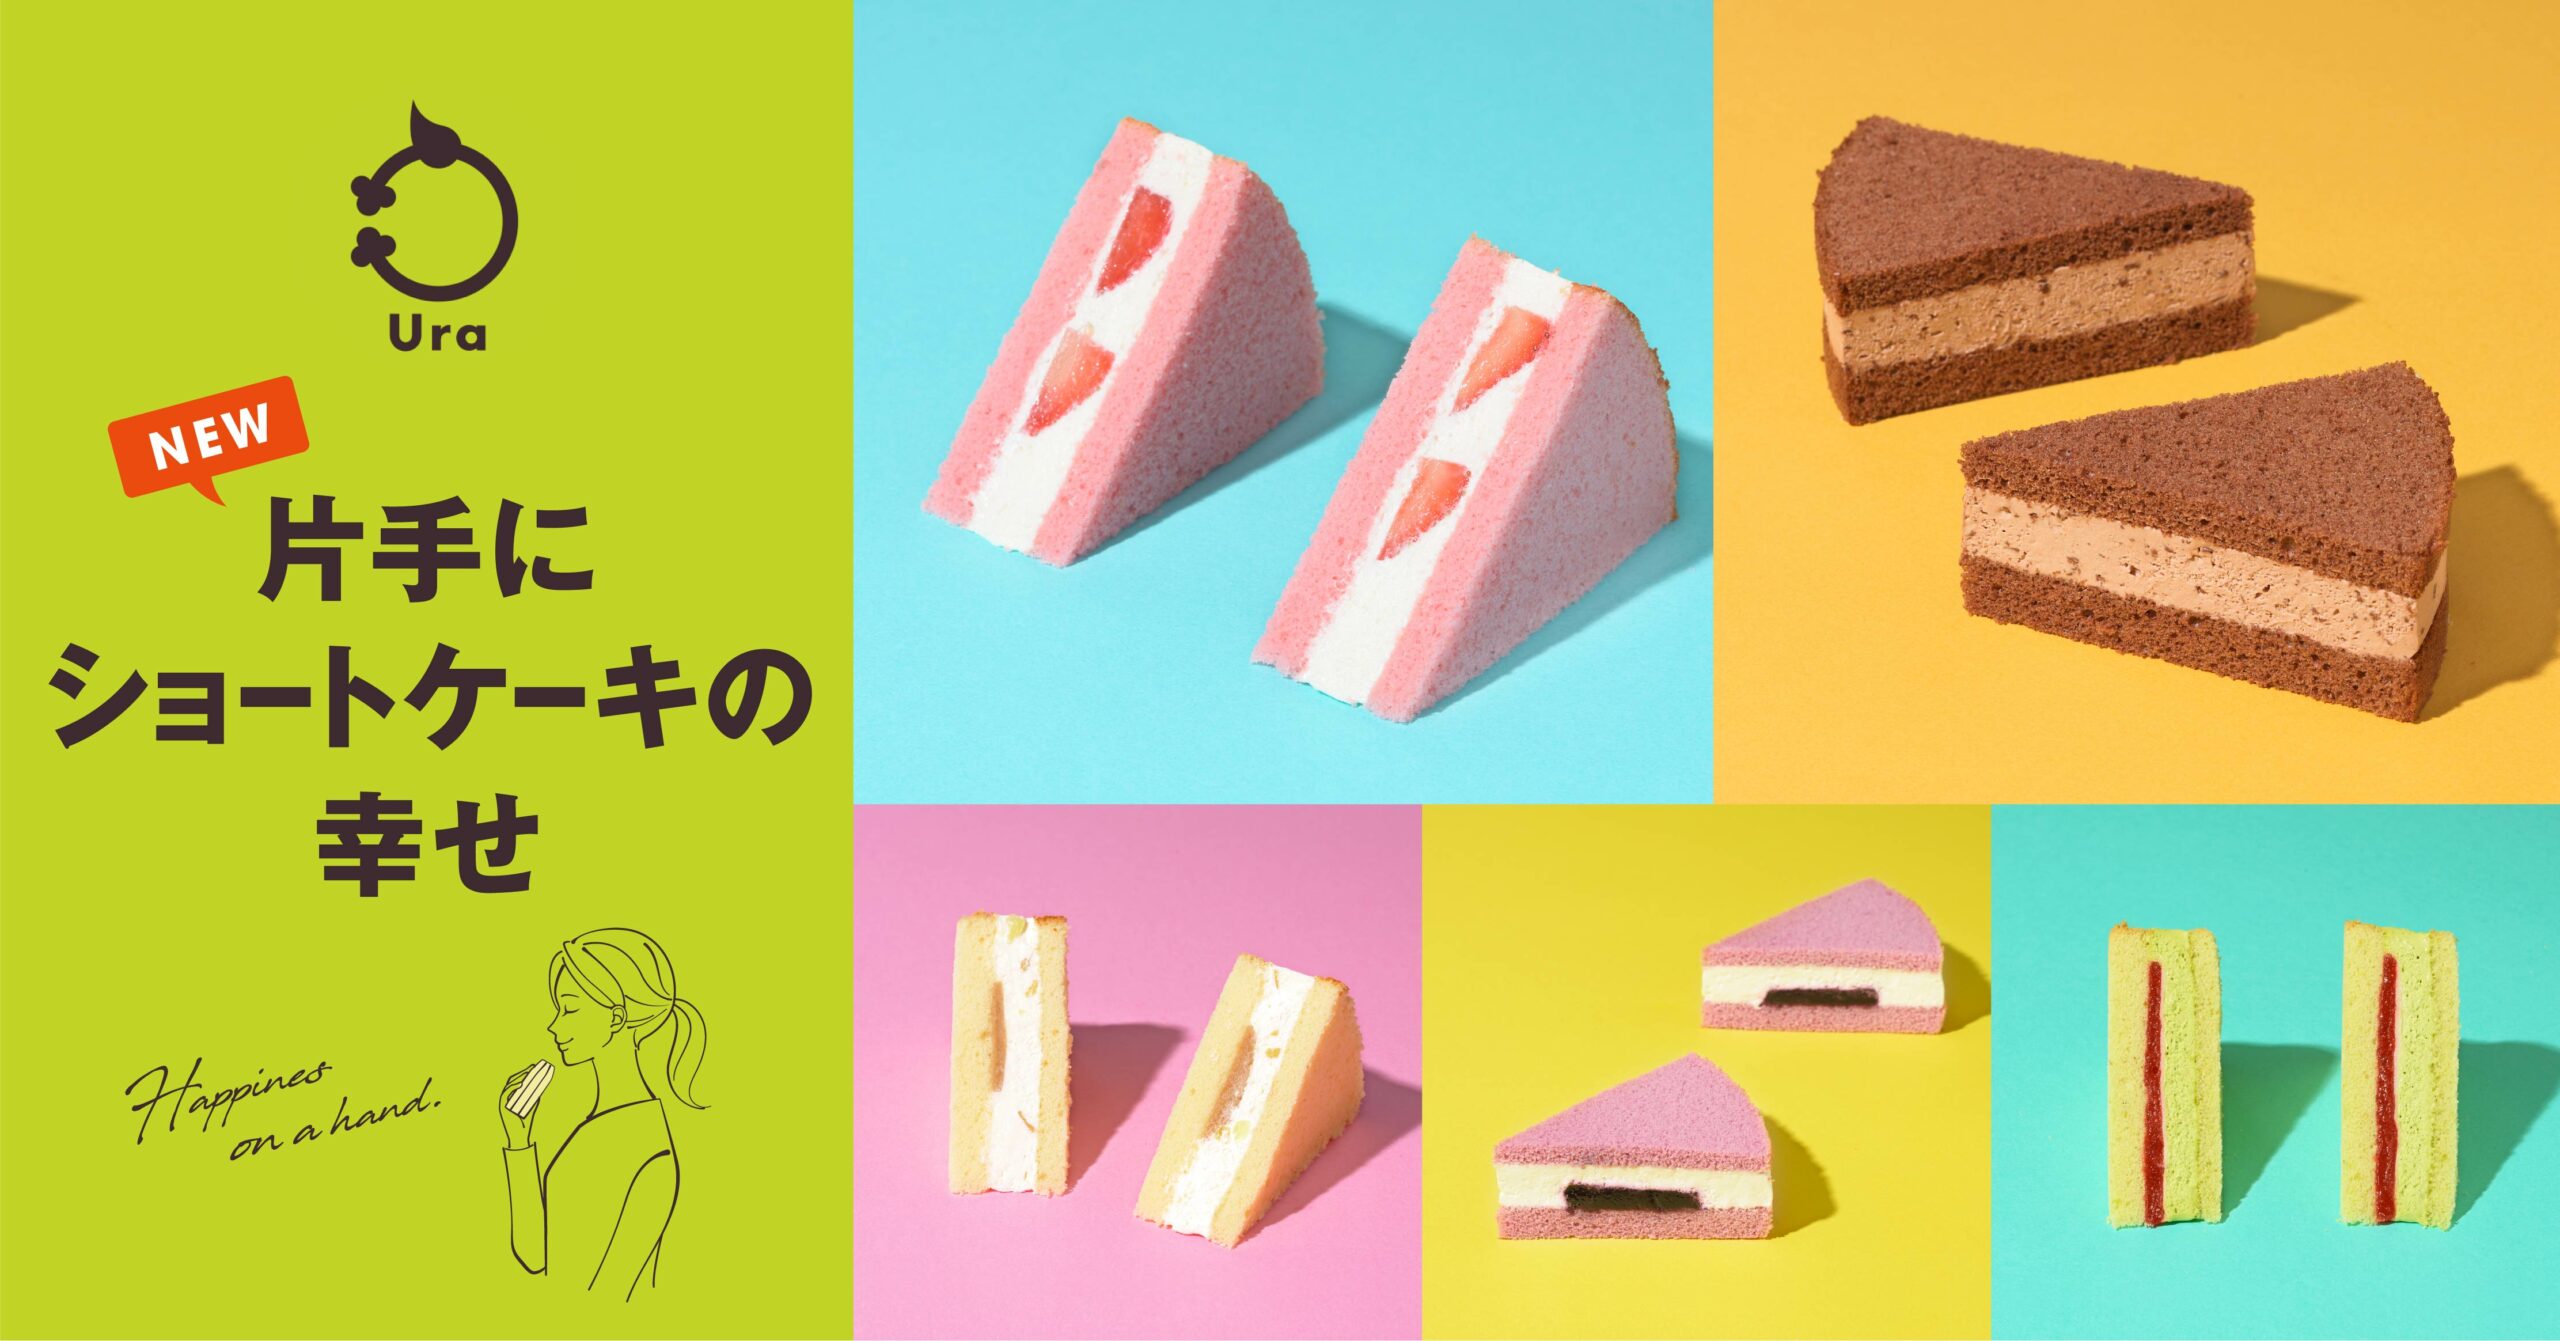 銀座コージーコーナーは11月2日より、東京駅限定スイーツブランド 「Ura（ウーラ）」にて、ワンハンドスイーツ「片手にショートケーキの幸せ」を提供する。